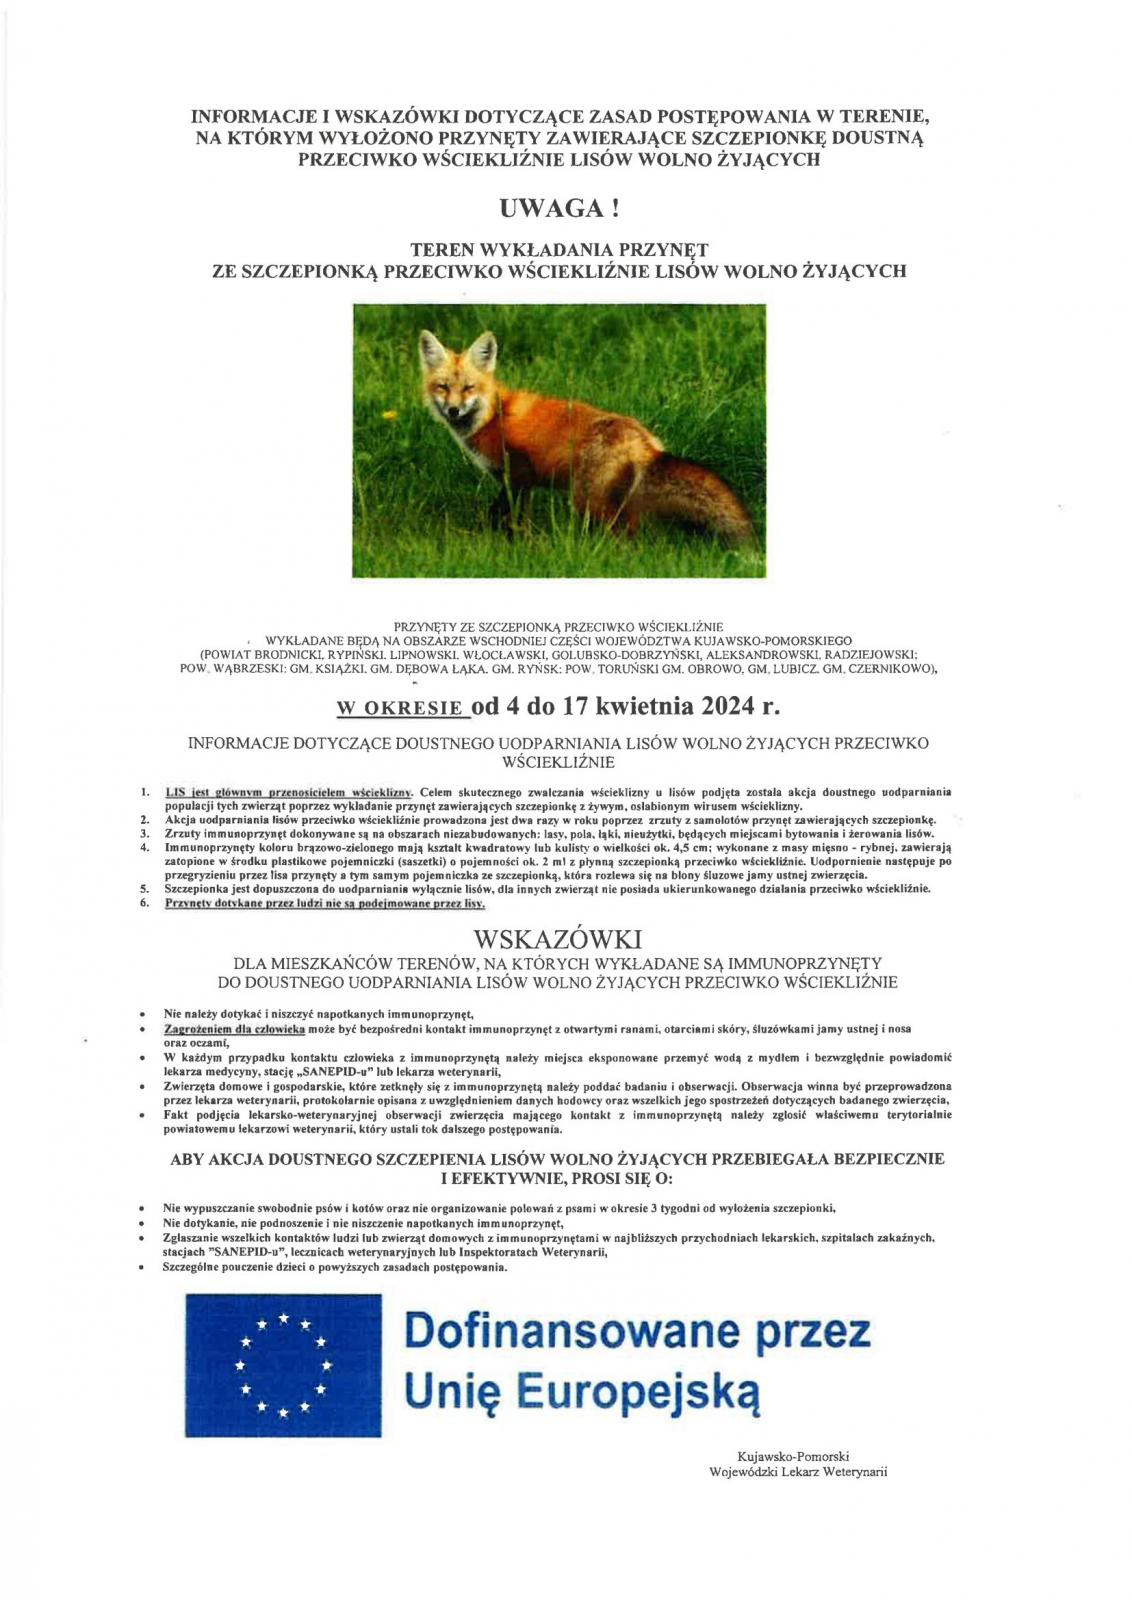 Plakat z informacjami o planowanym zabiegu szczepienia lisów.